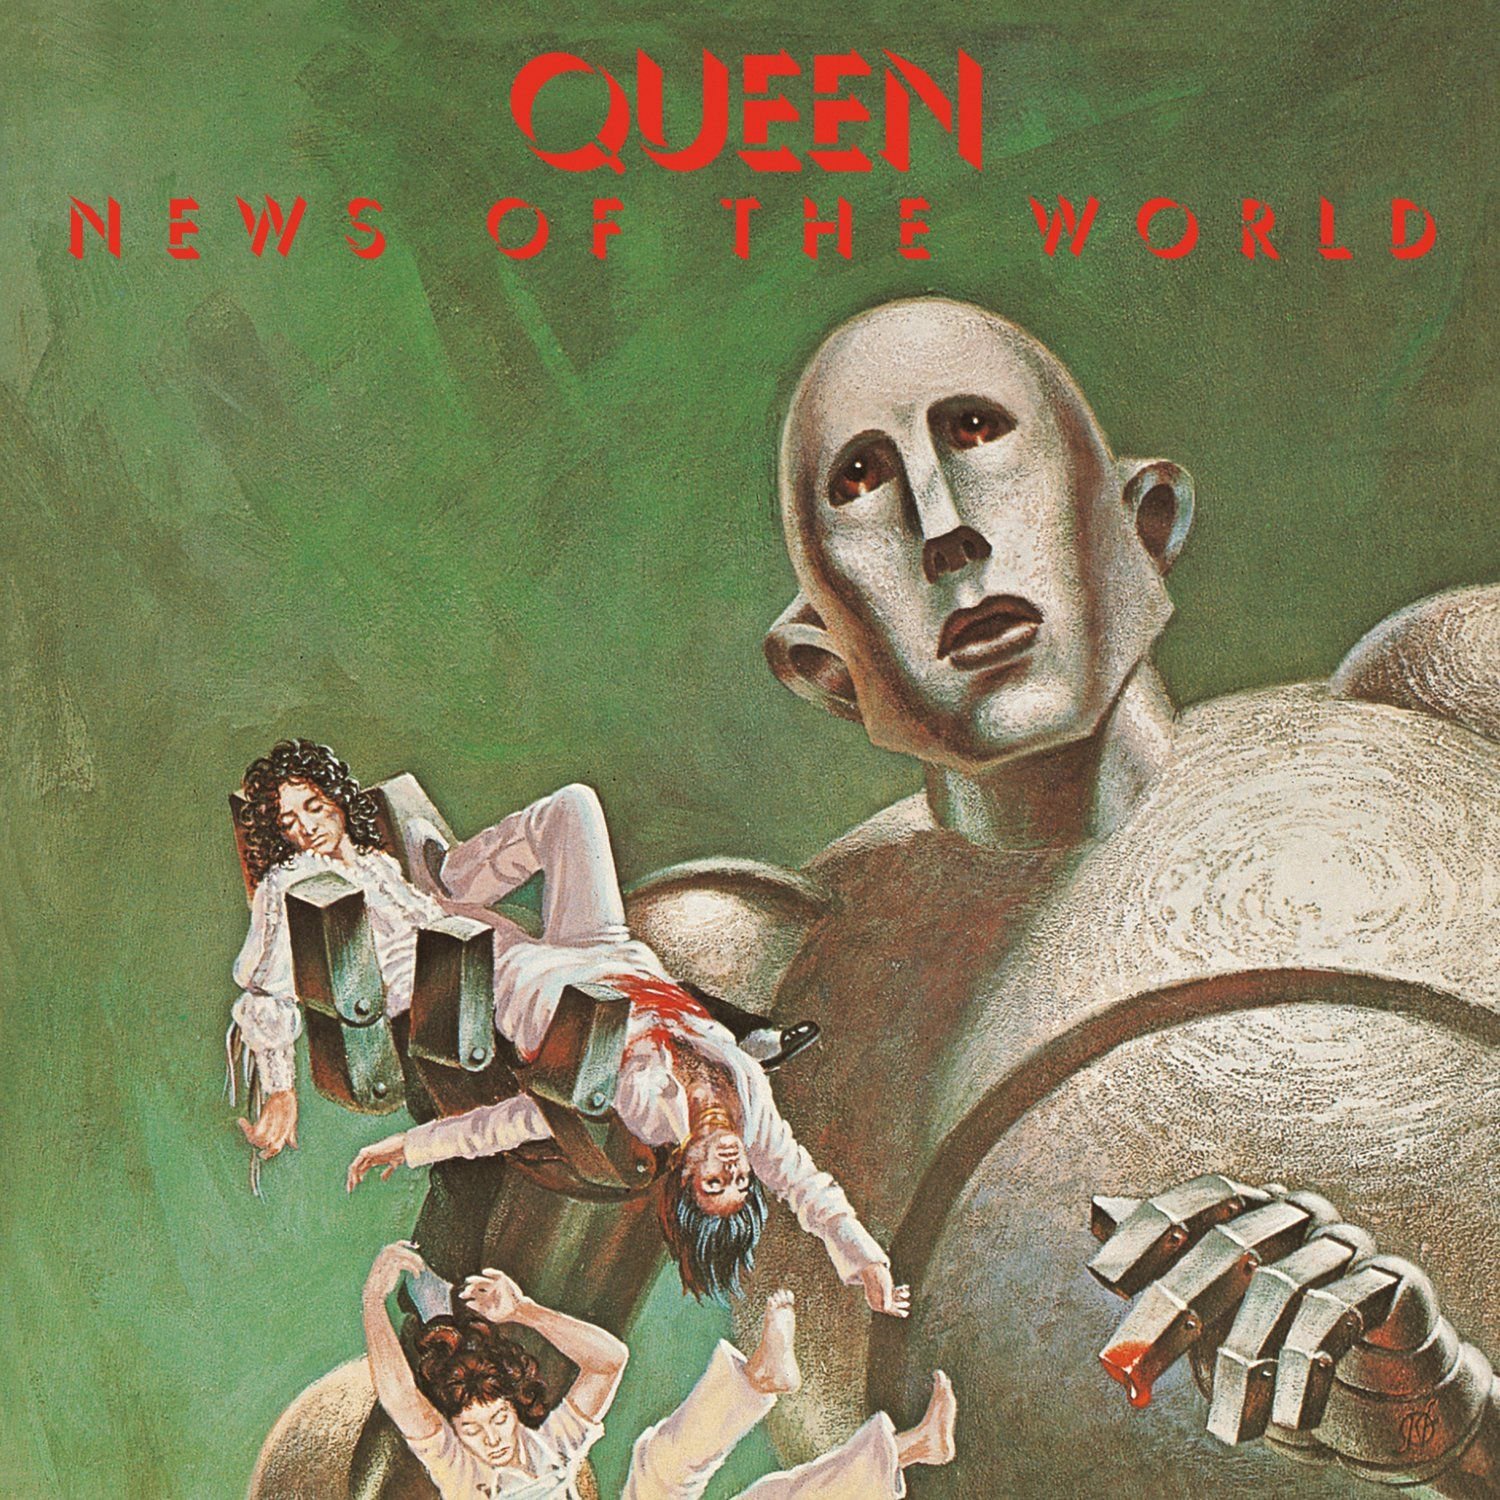 Vinile Queen - News Of The World NUOVO SIGILLATO, EDIZIONE DEL 25/09/2015 SUBITO DISPONIBILE